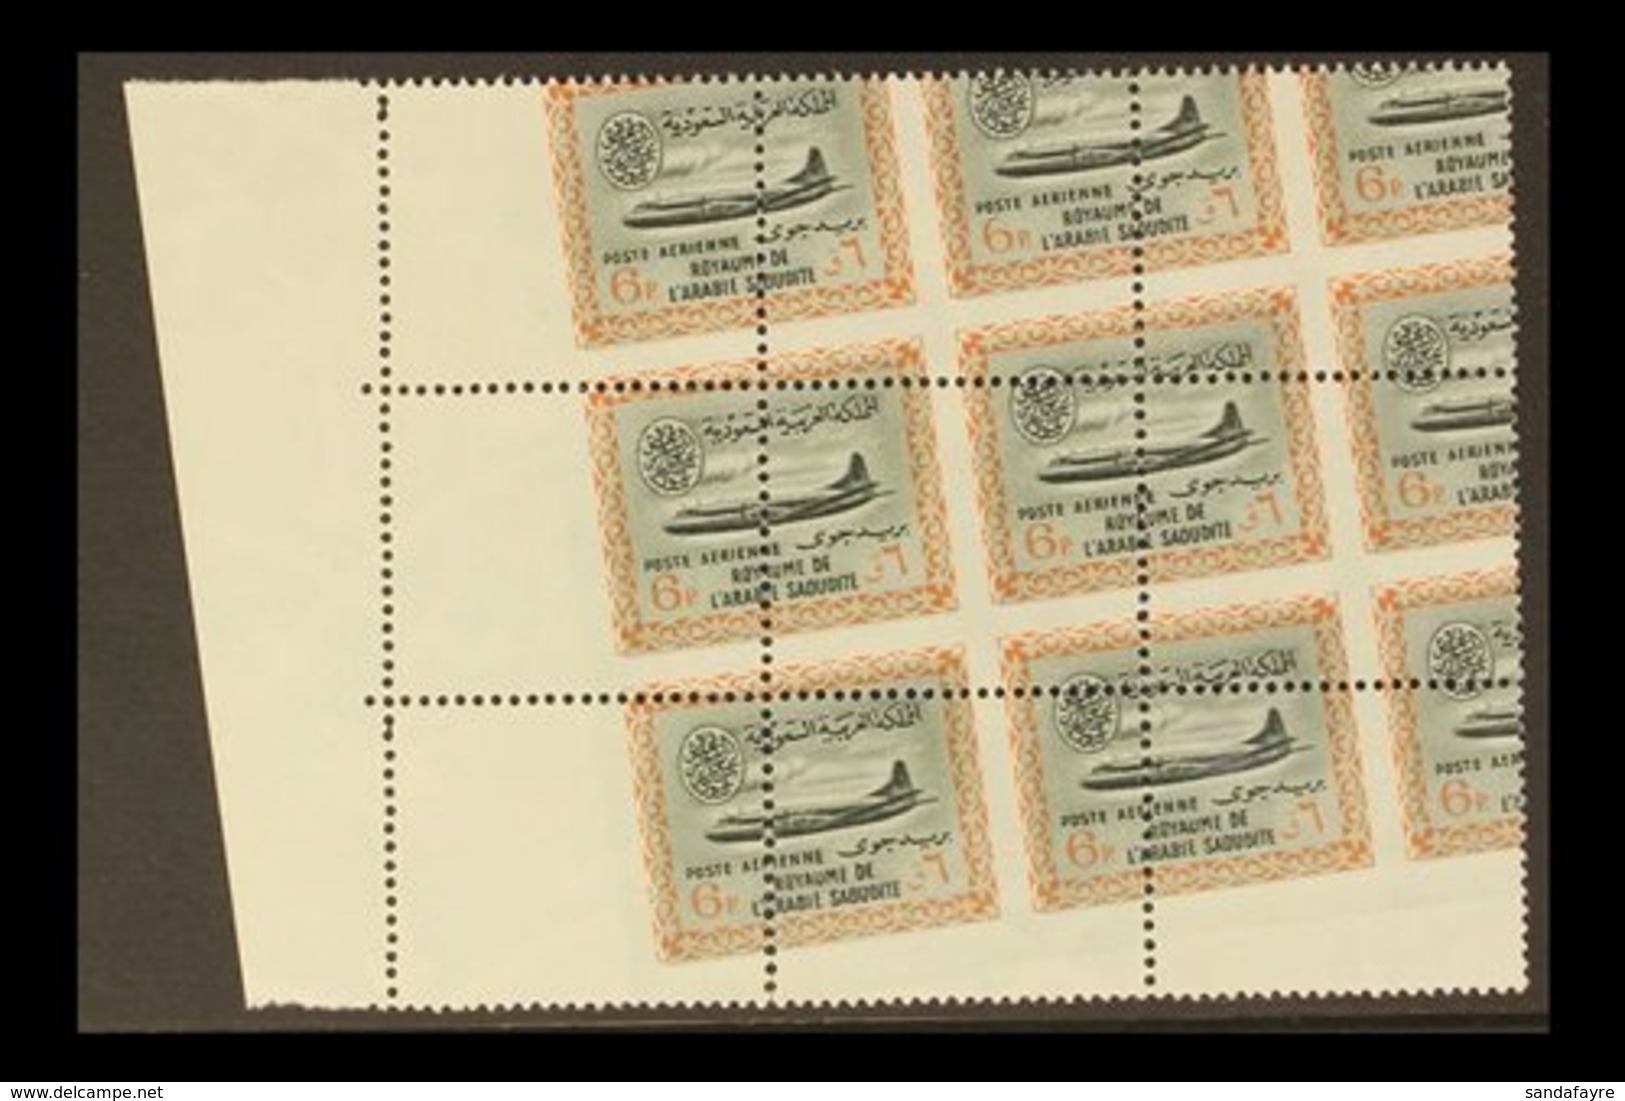 1963 - 5 6p Airmail, Vickers Viscount, SG 484, Marginal Mint Block Of 9 Showing A Massive Diagonal Perf Shift. Spectacul - Saoedi-Arabië